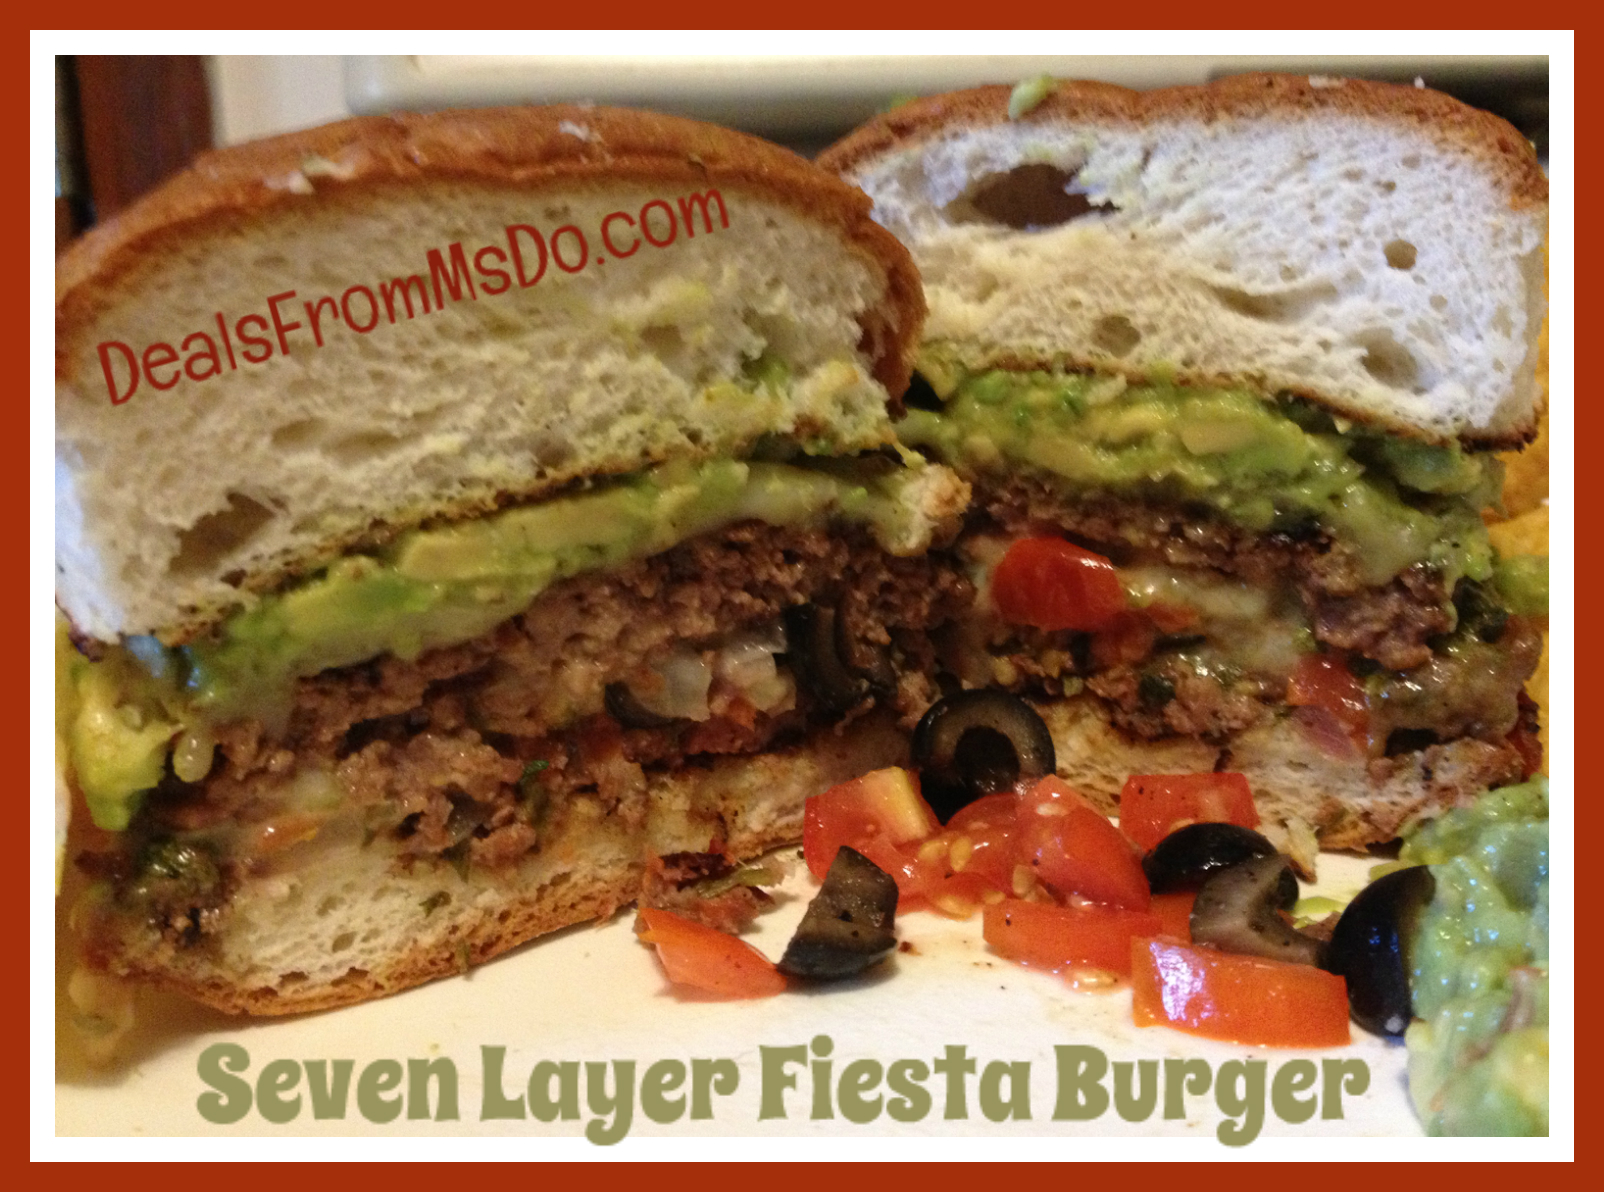 Seven Layer Fiesta Burger